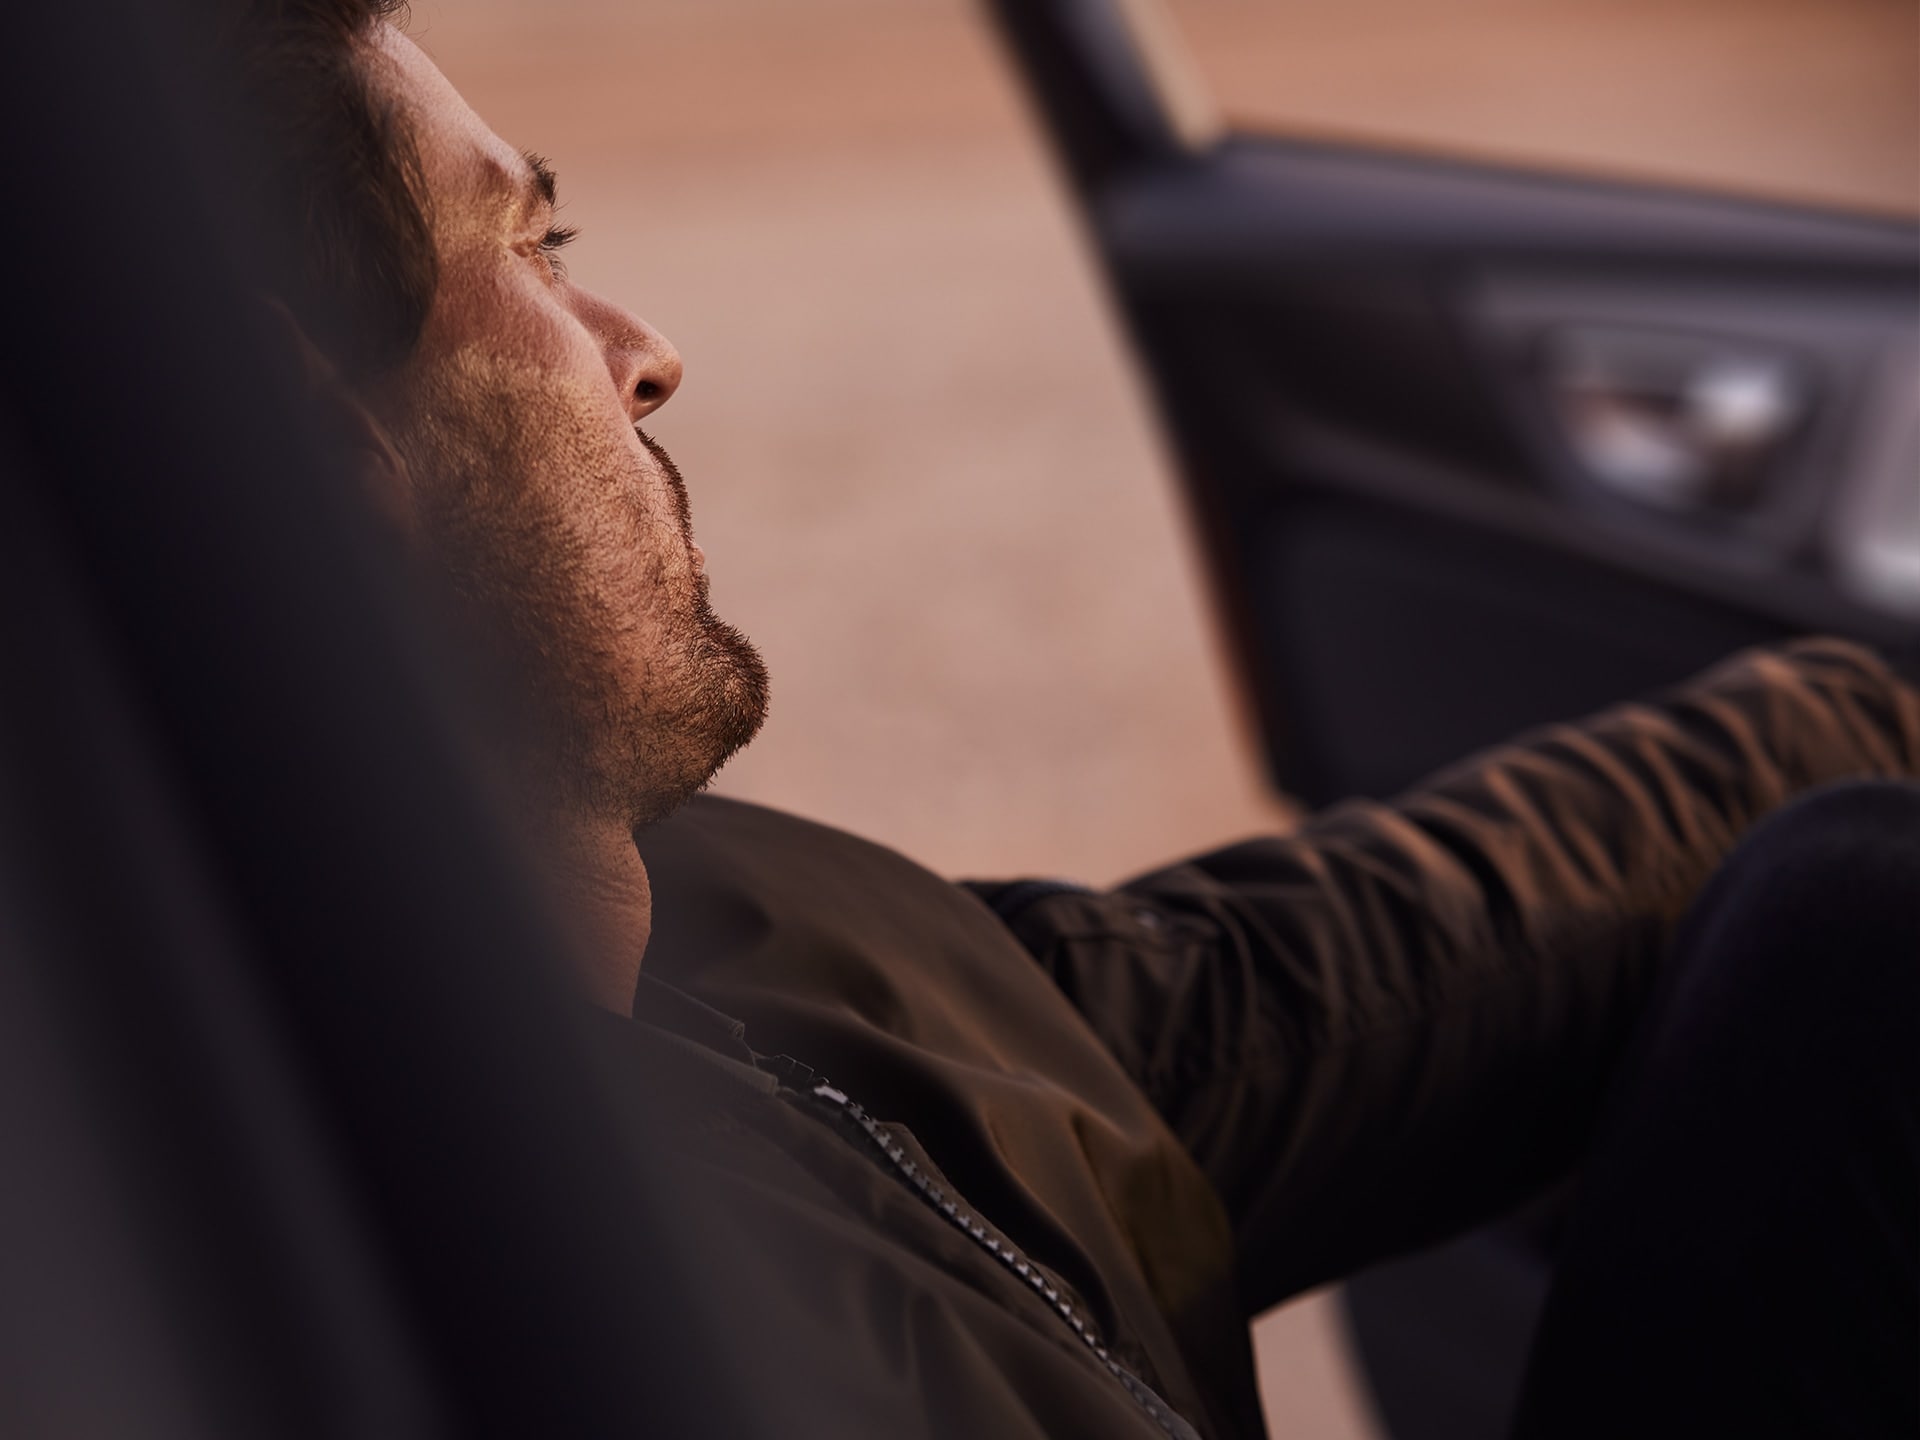 棕髮男子坐在 Volvo S60 內，陽光照映在他的臉上。